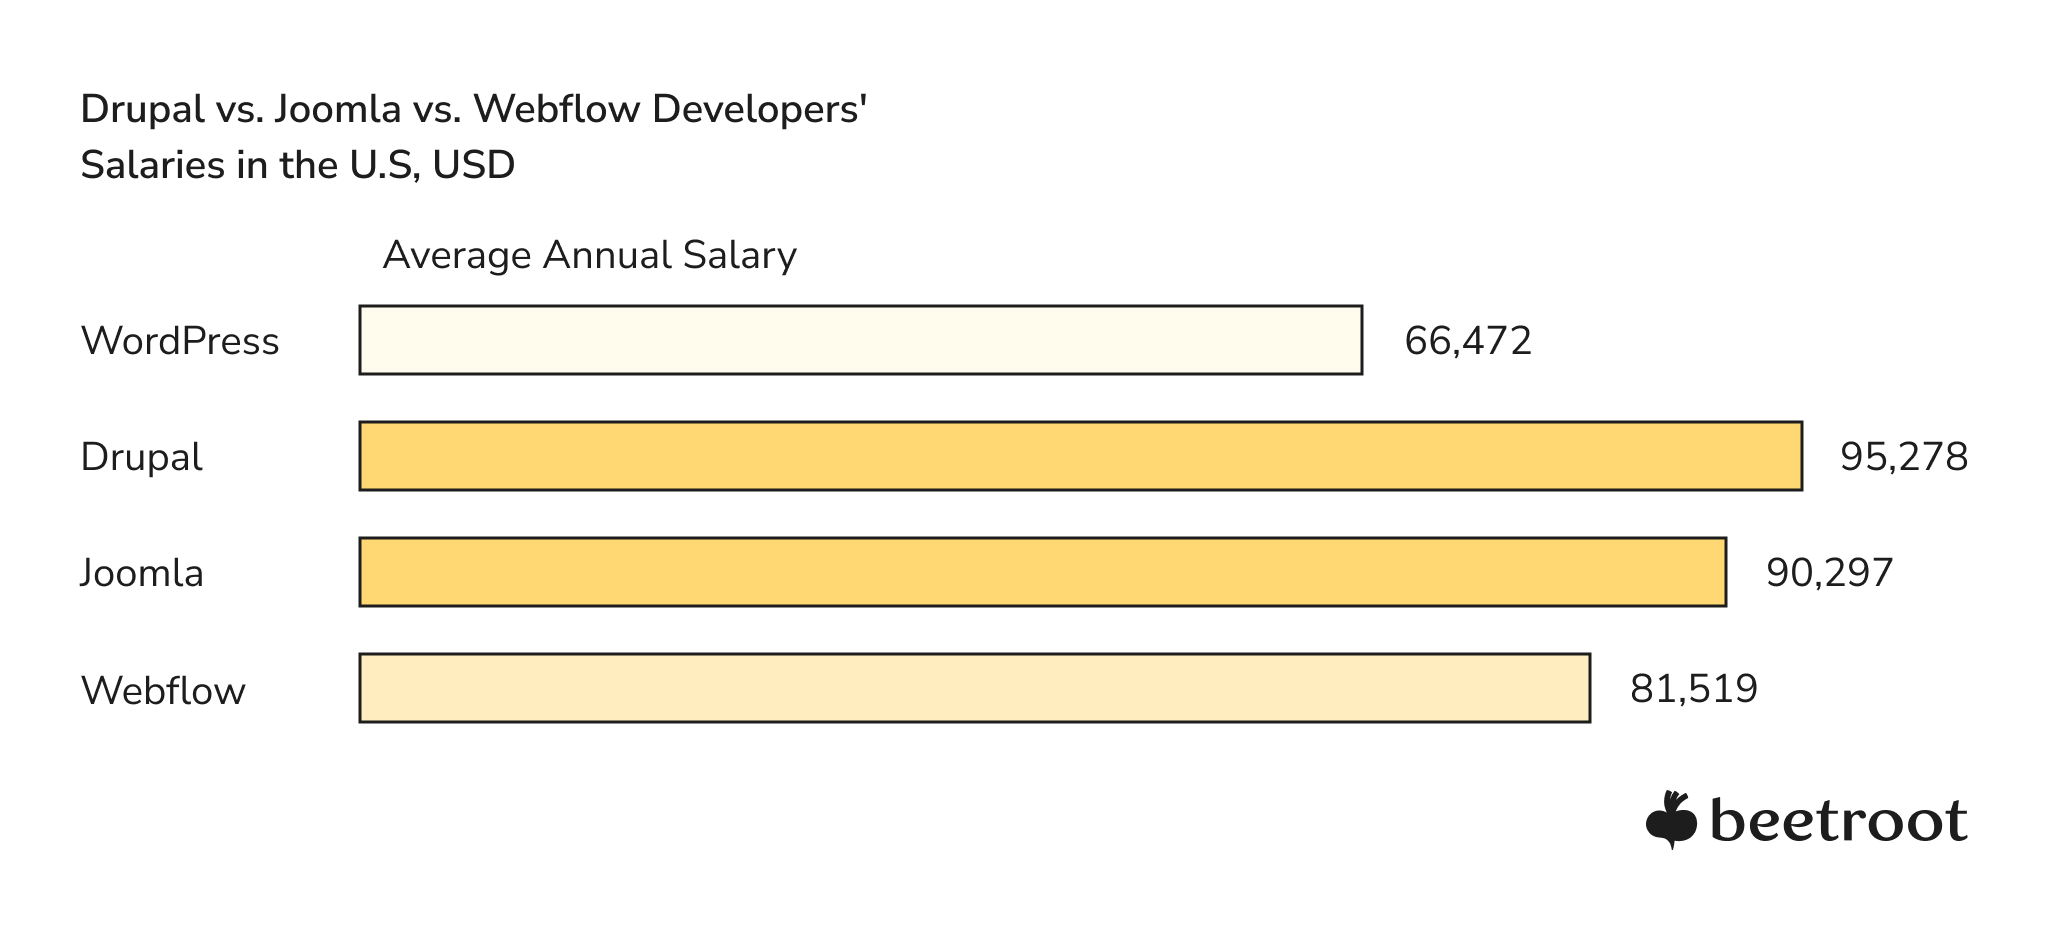 WordPress Developer Salaries vs. Drupal vs Joomla vs Webflow 